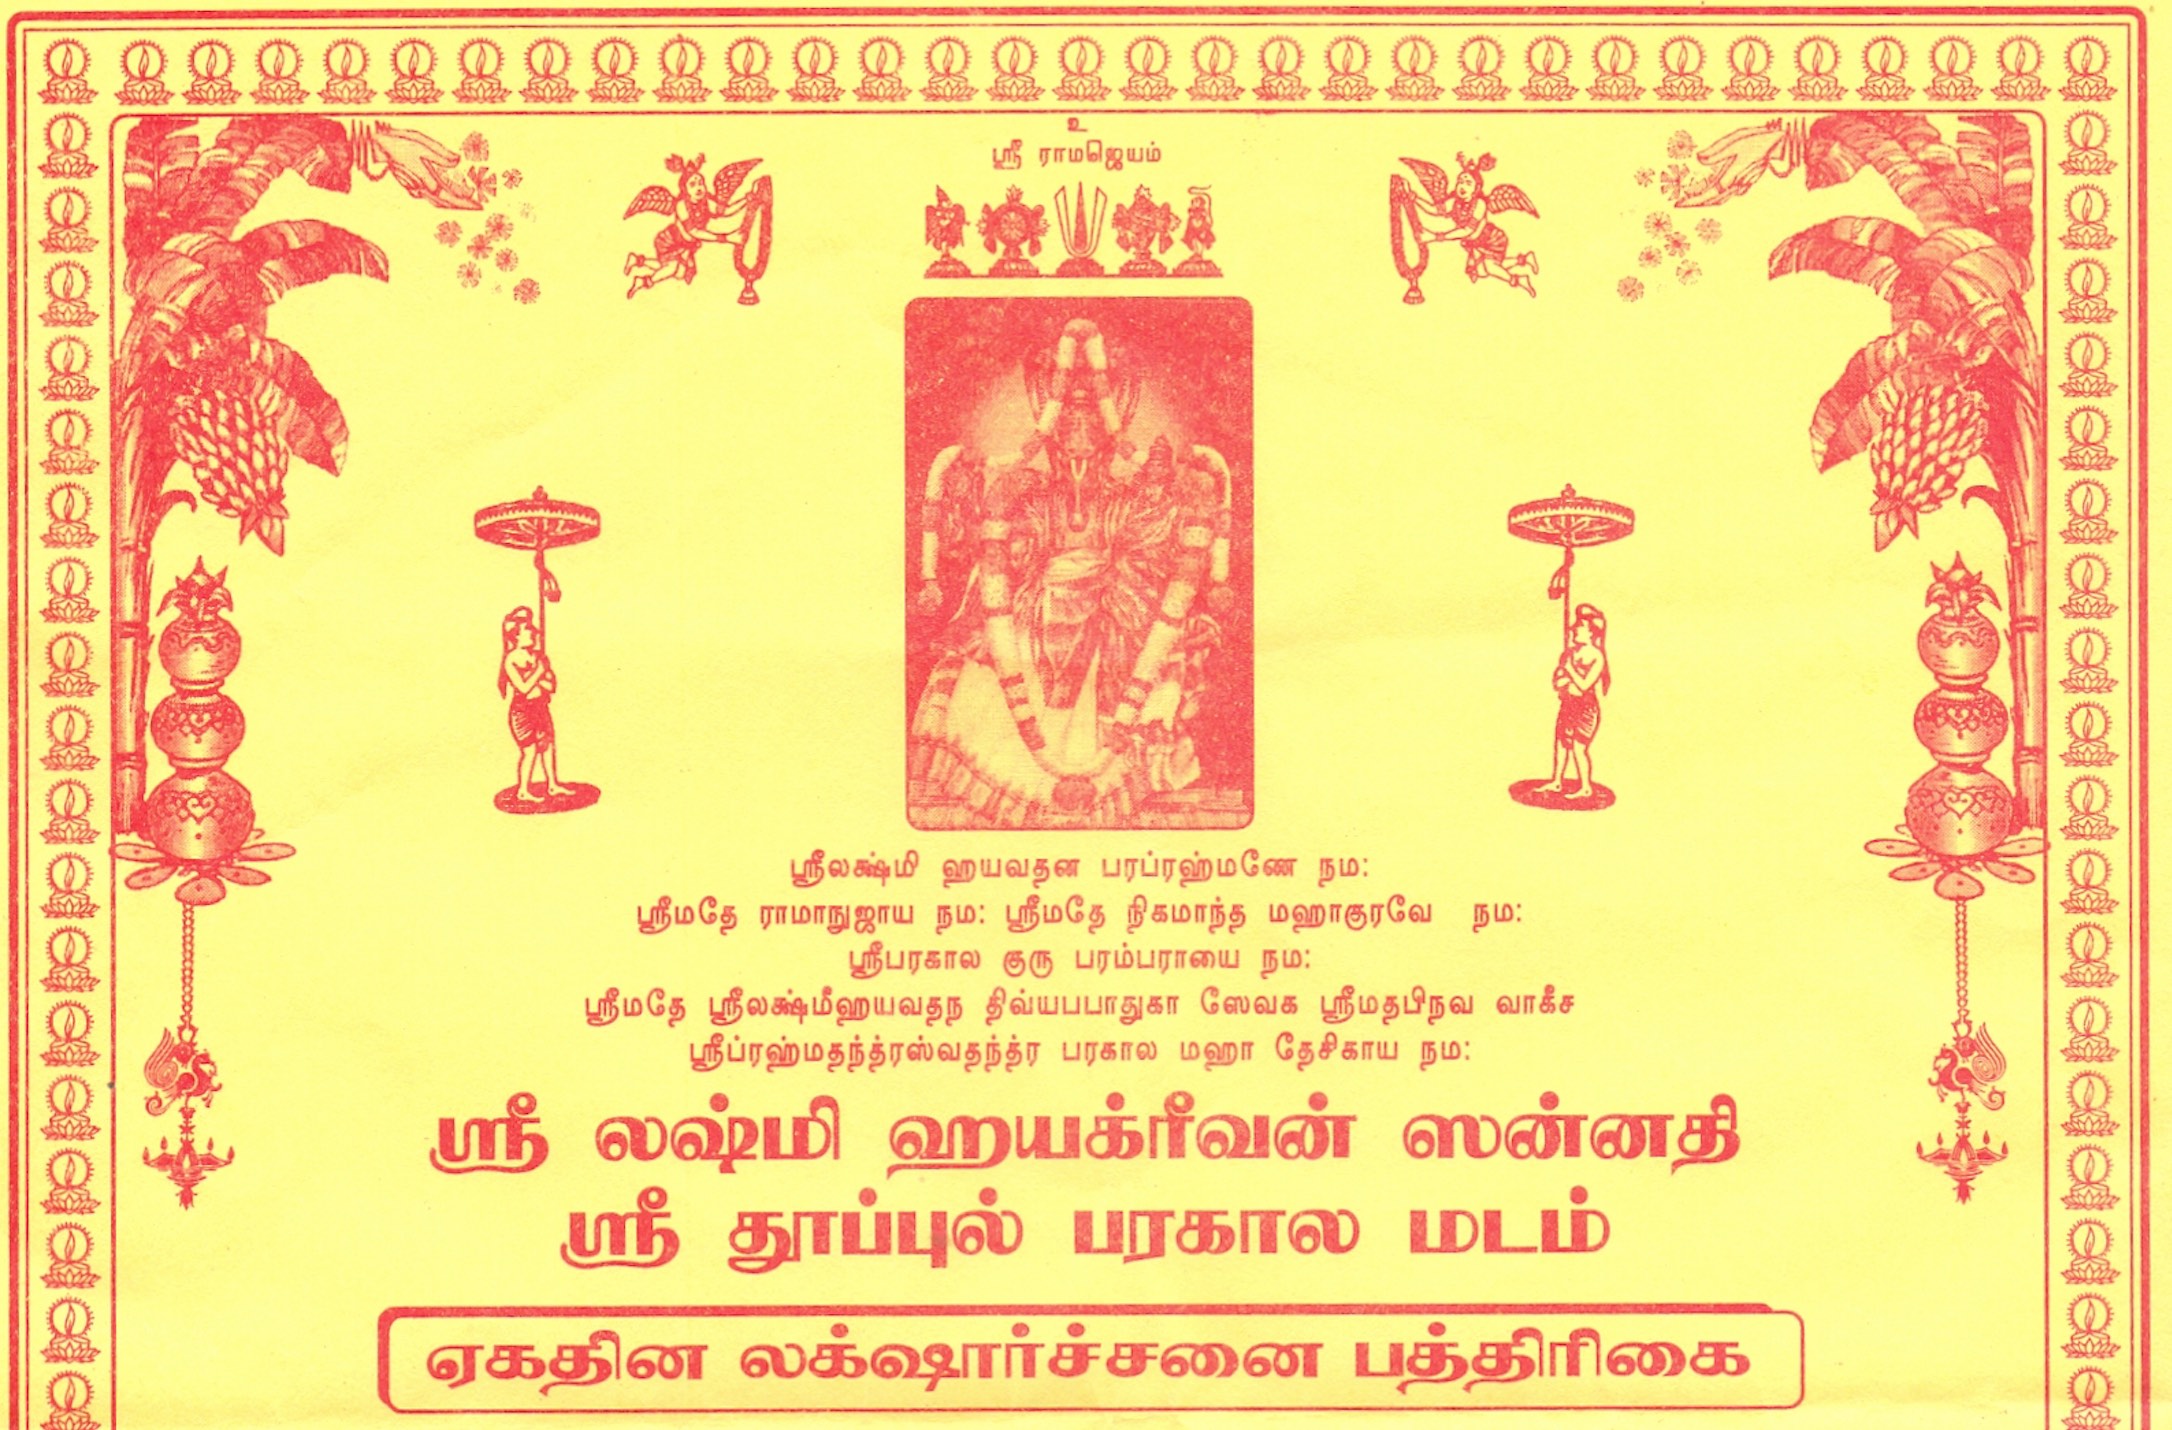 Thoopul Sri Lakshmi Hayagreevan Sannadhi Laksharchanai Patrikai